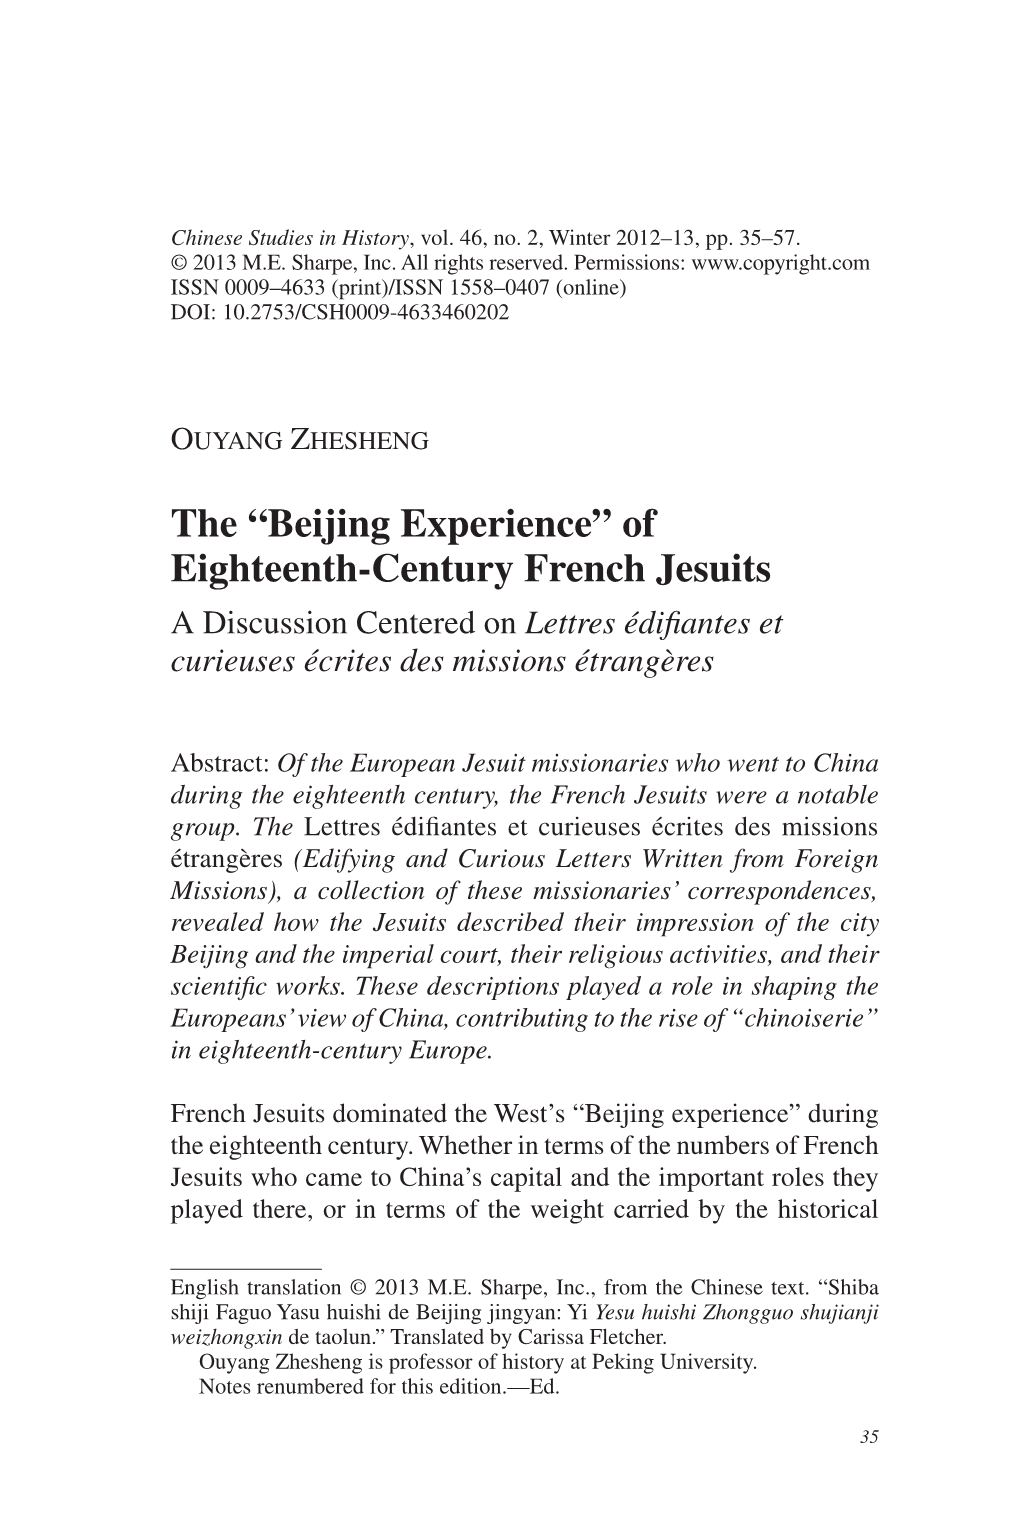 The “Beijing Experience” of Eighteenth-Century French Jesuits a Discussion Centered on Lettres Édifiantes Et Curieuses Écrites Des Missions Étrangères